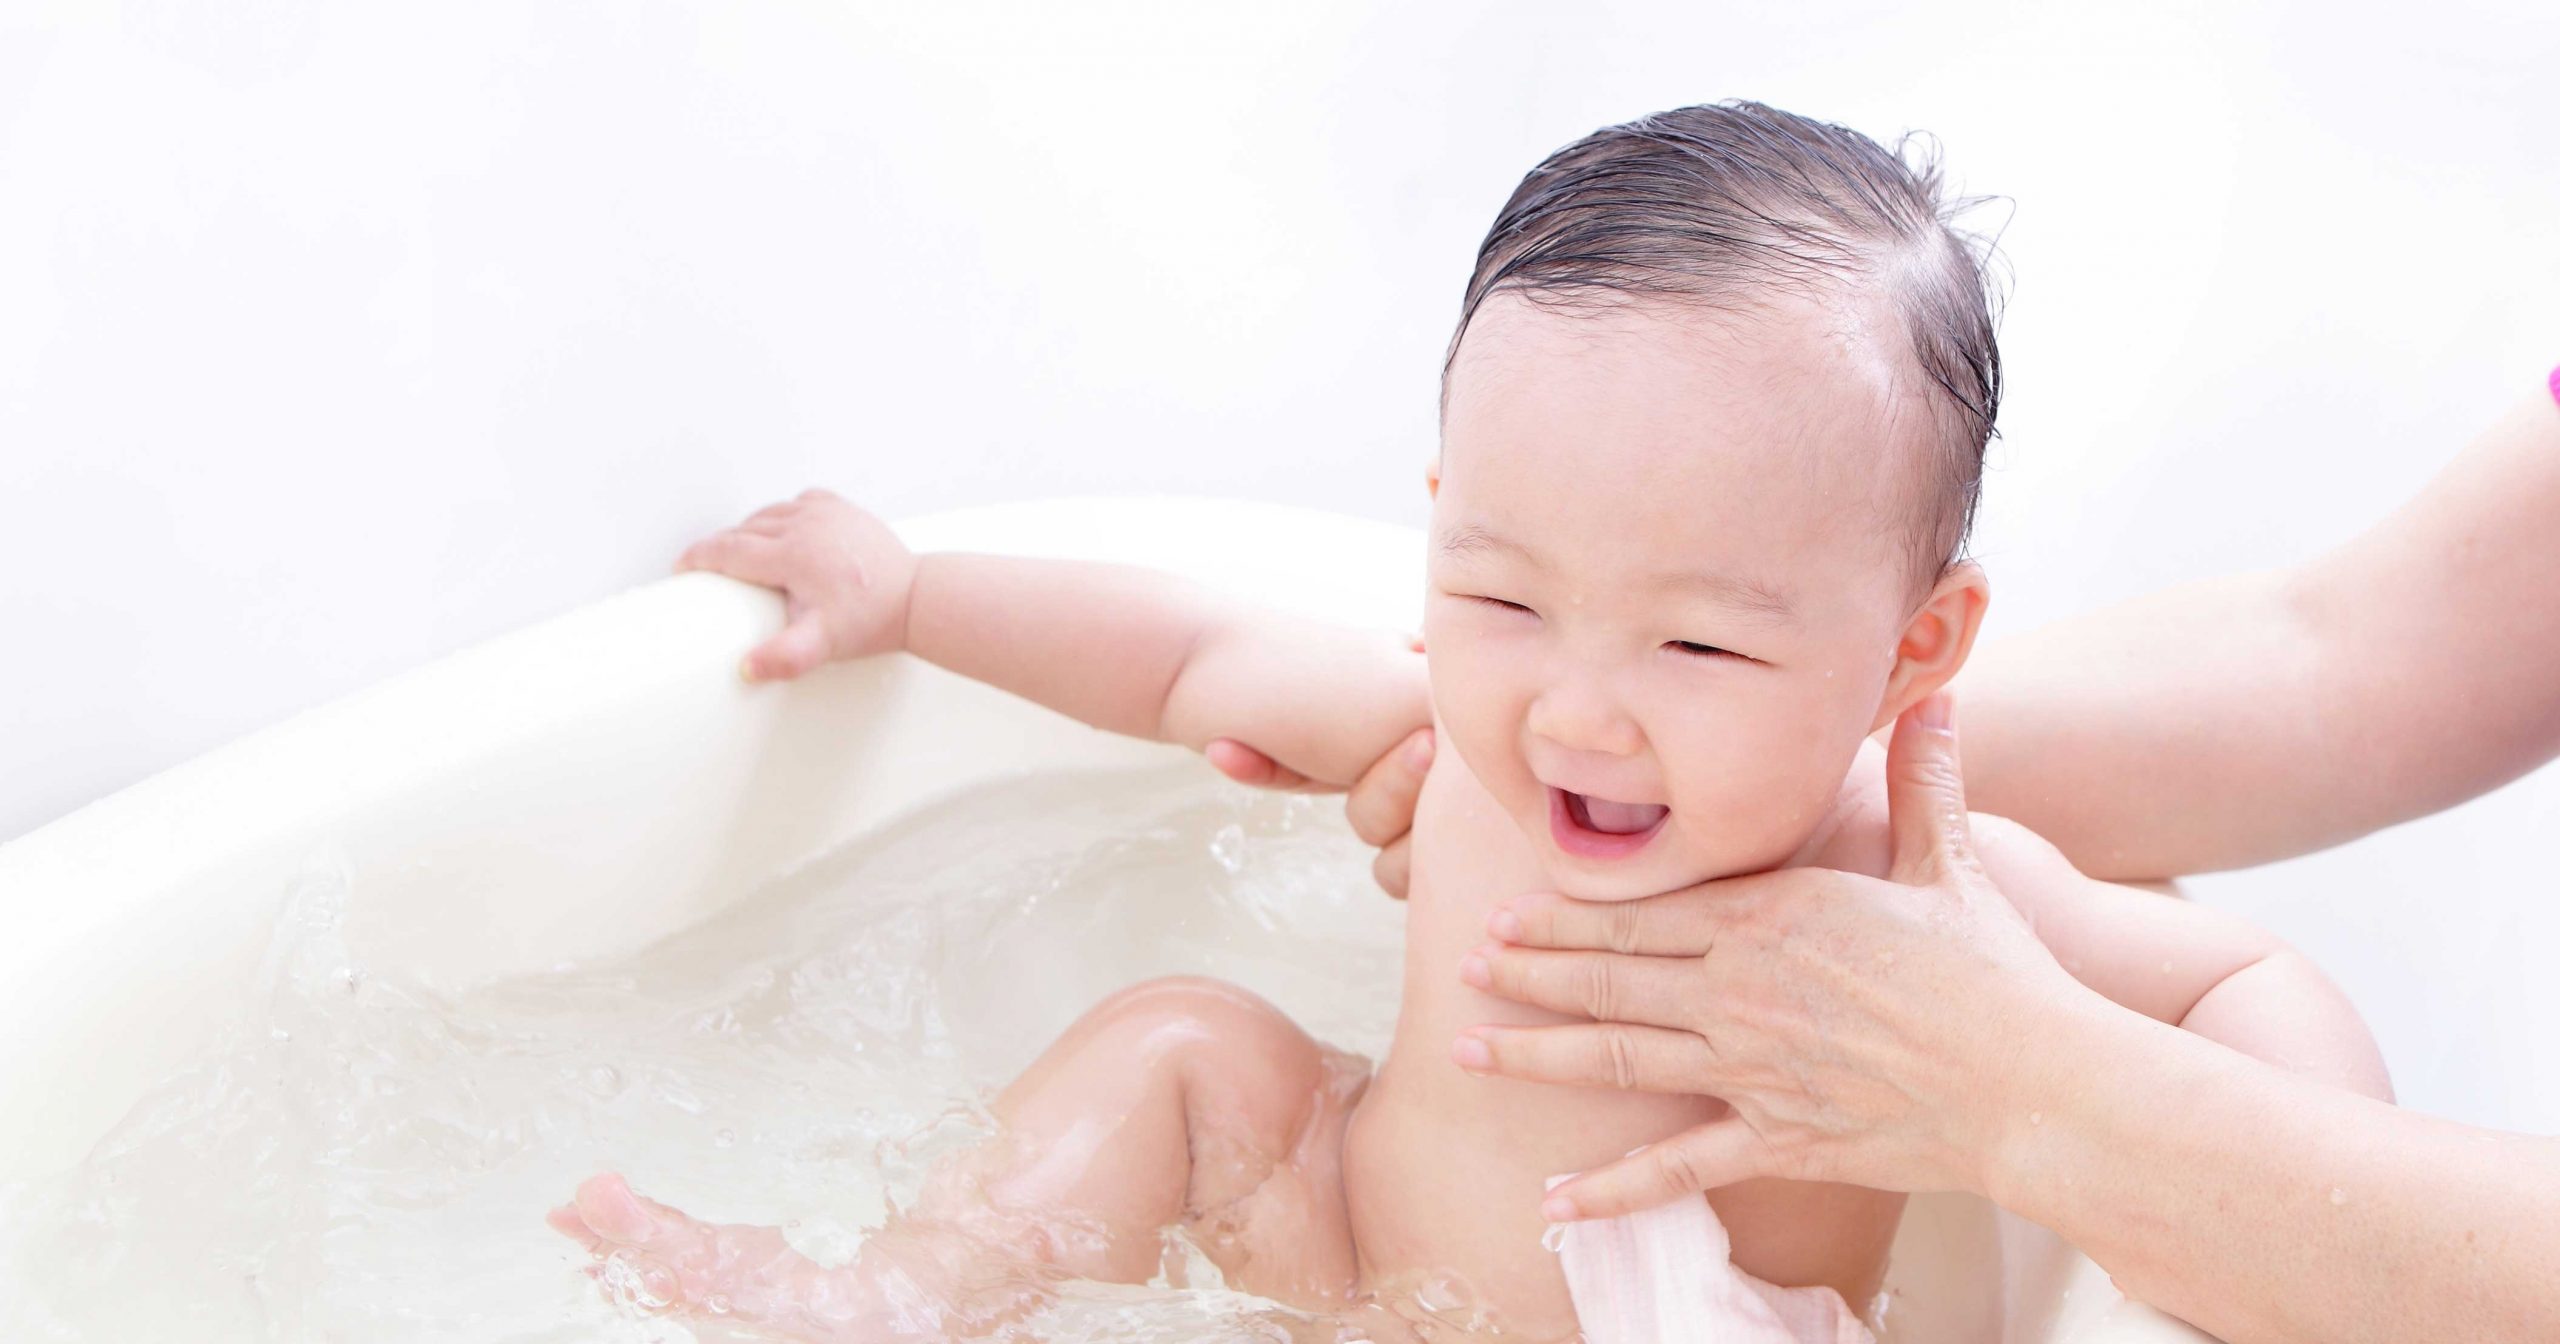 浴槽掃除の仕方を追い焚き配管 エプロン別に解説 赤ちゃんのいる家庭必見 家事ネタ